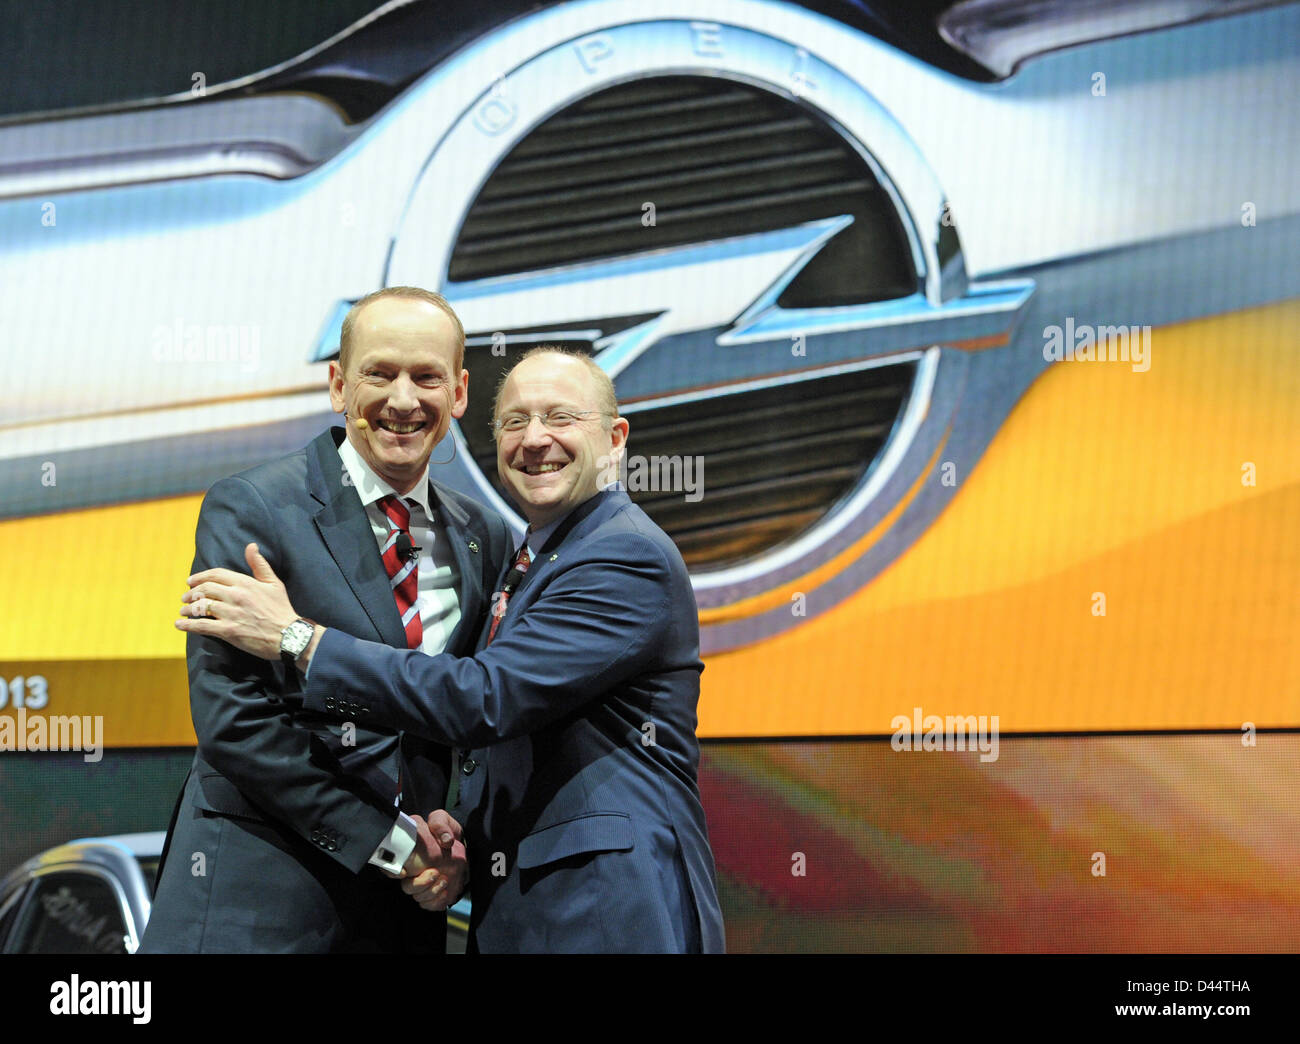 Président du conseil d'un constructeur automobile Opel, Karl-Thomas Neumann (L) sourit et serre la main avec le vice-président de General Motors (GM) à Detroit, Steve Girsky, au cours de la première journée de la presse au 83th Salon de Genève à Genève, Suisse, 5 mars 2013. Photo : Uli Deck Banque D'Images